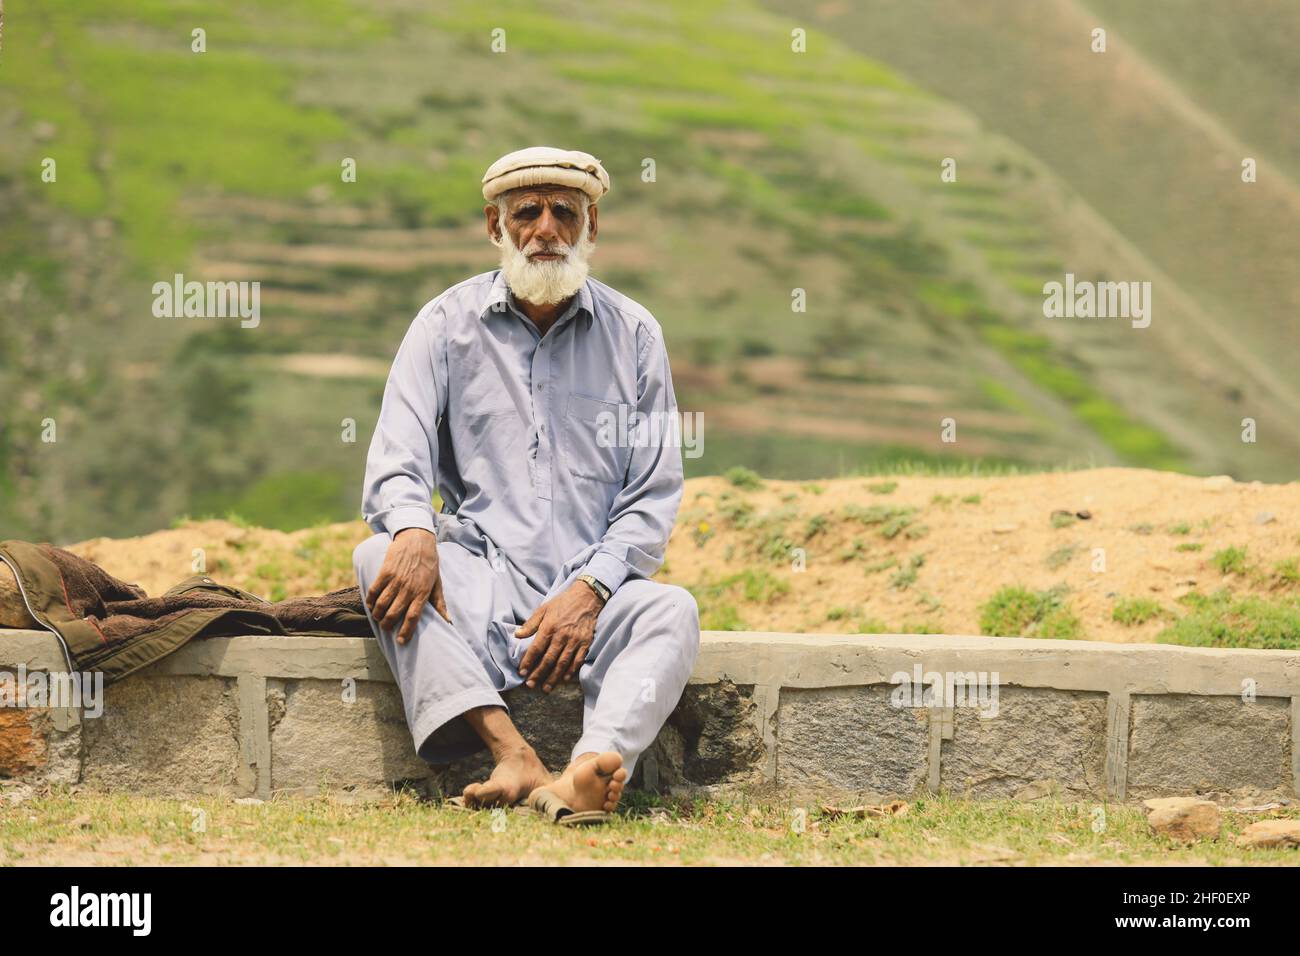 Gilgit, Pakistan - 08 juin 2020 : vieil homme pakistanais avec la barbe blanche dans le Pakol traditionnel Banque D'Images